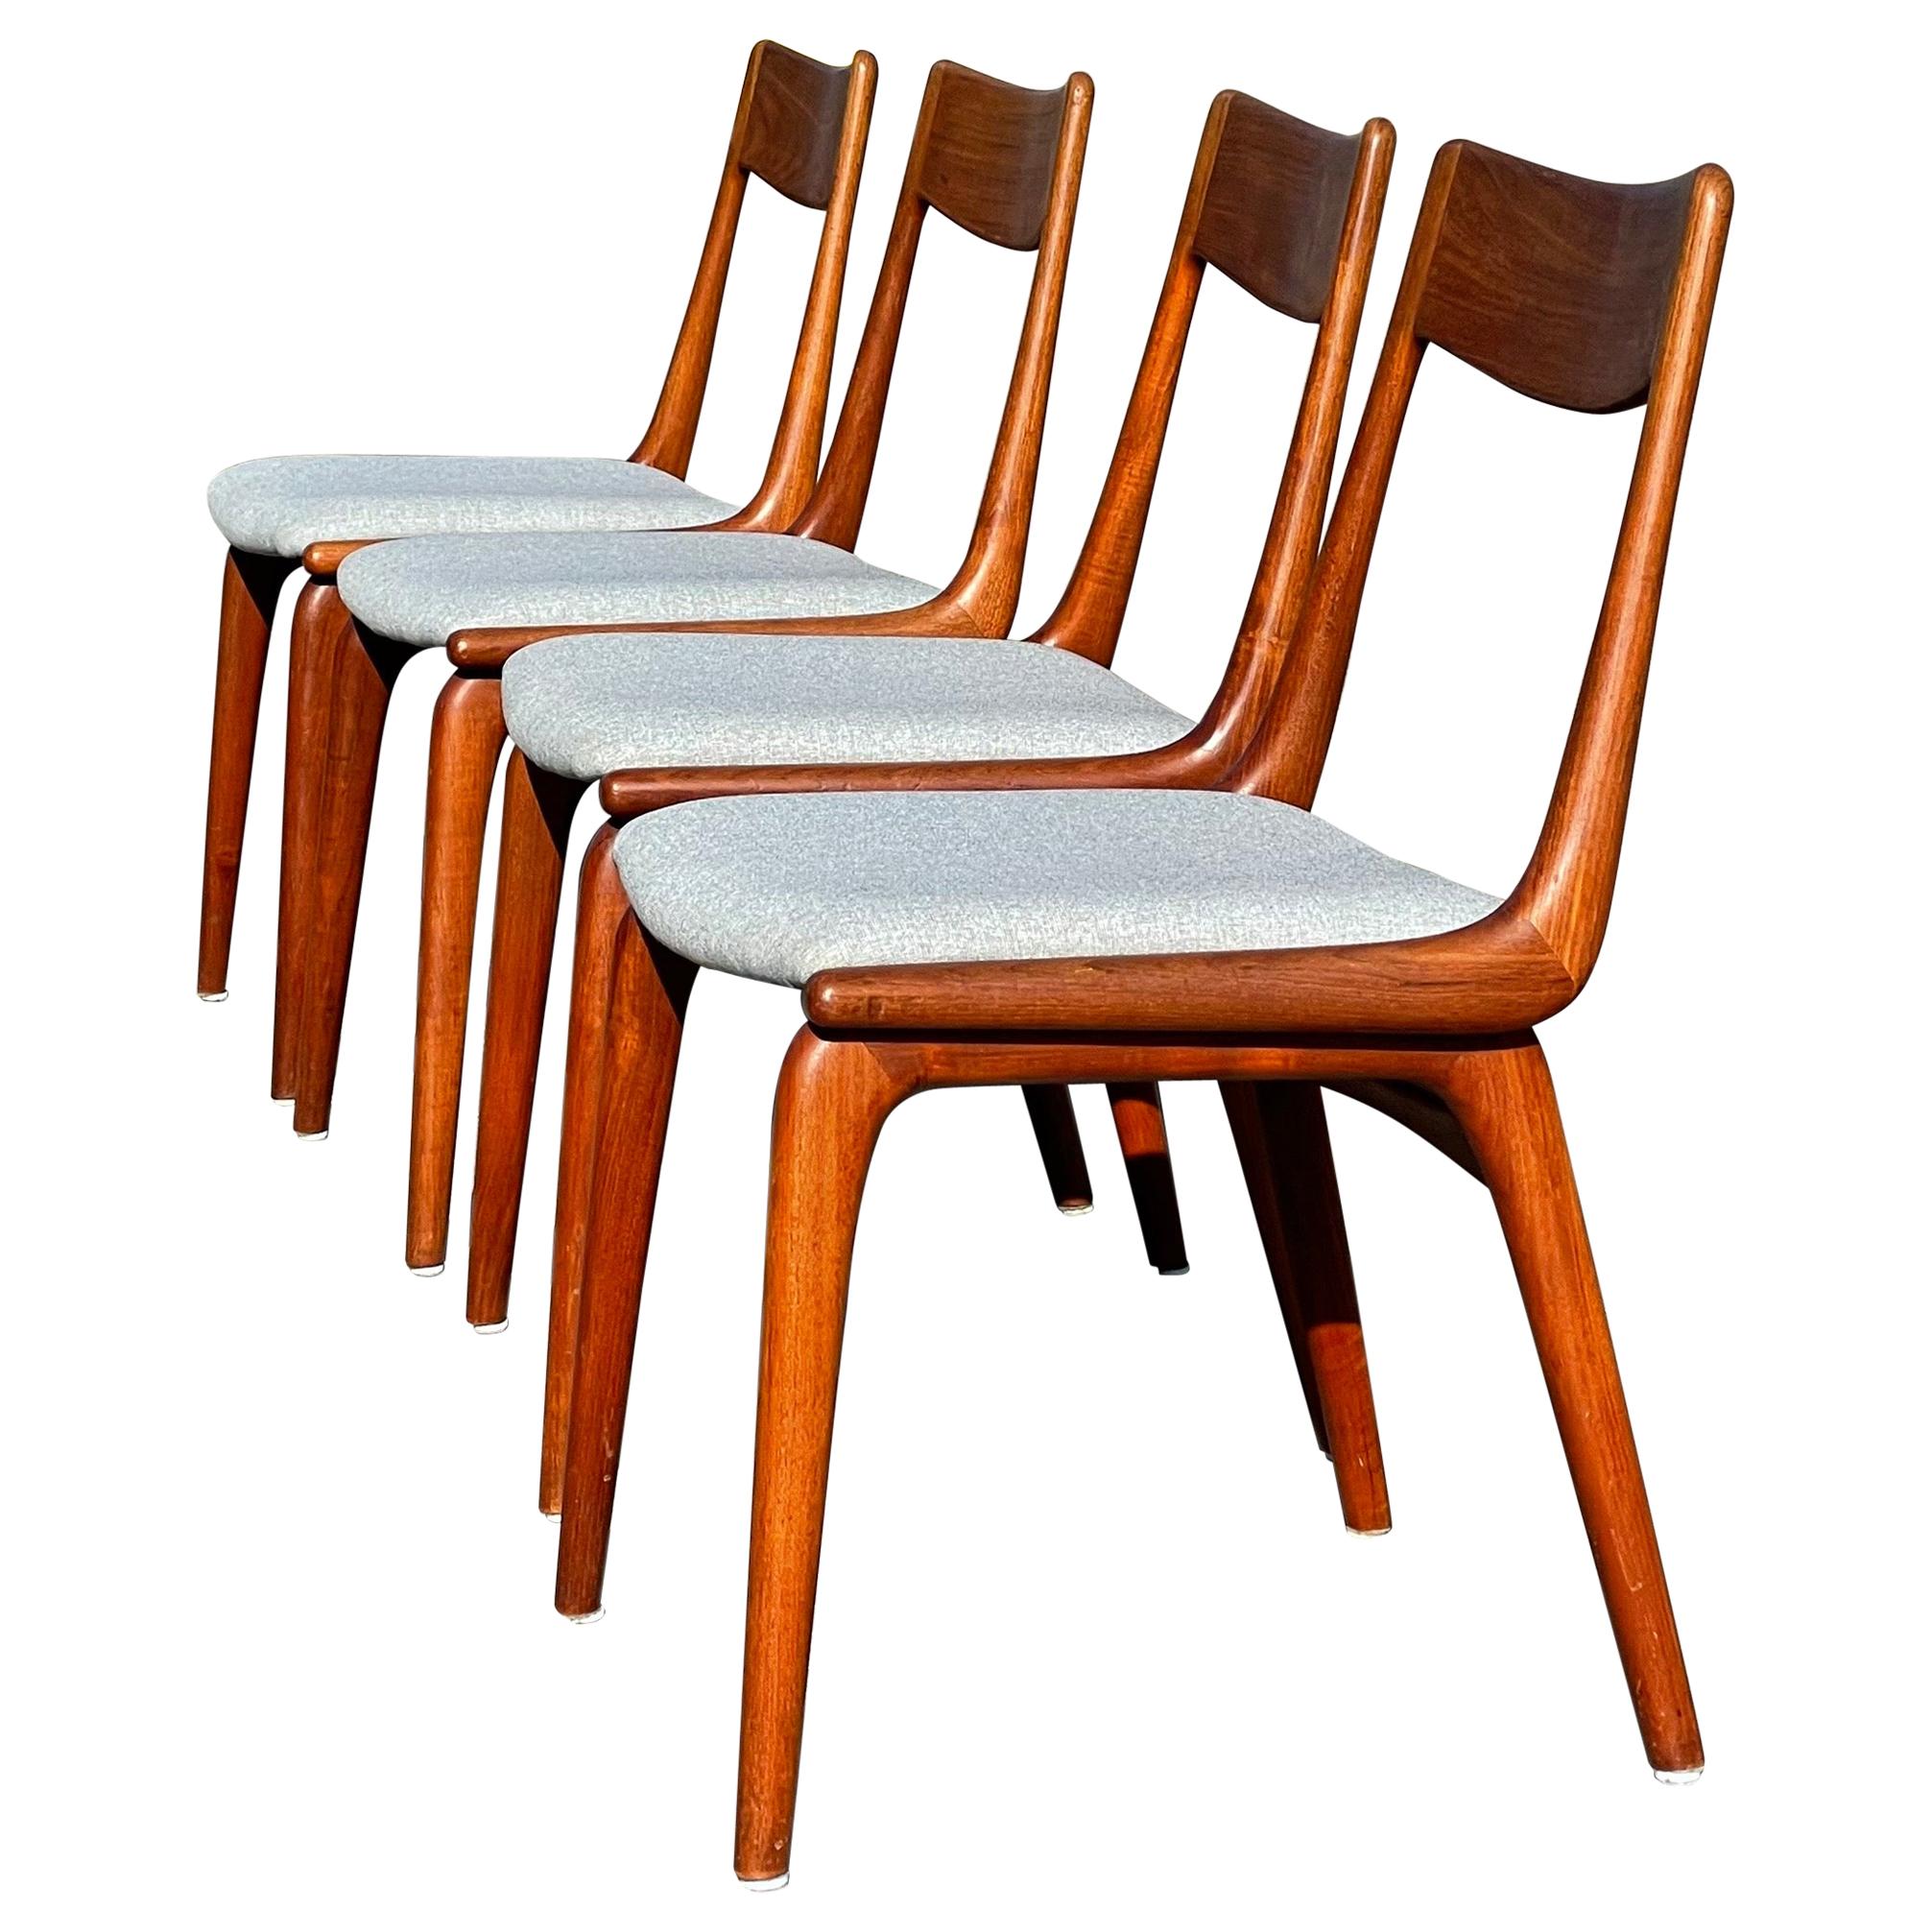 Midcentury Teak Boomerang Chairs #370 by E. Christensen for Slagelse, Set of 4